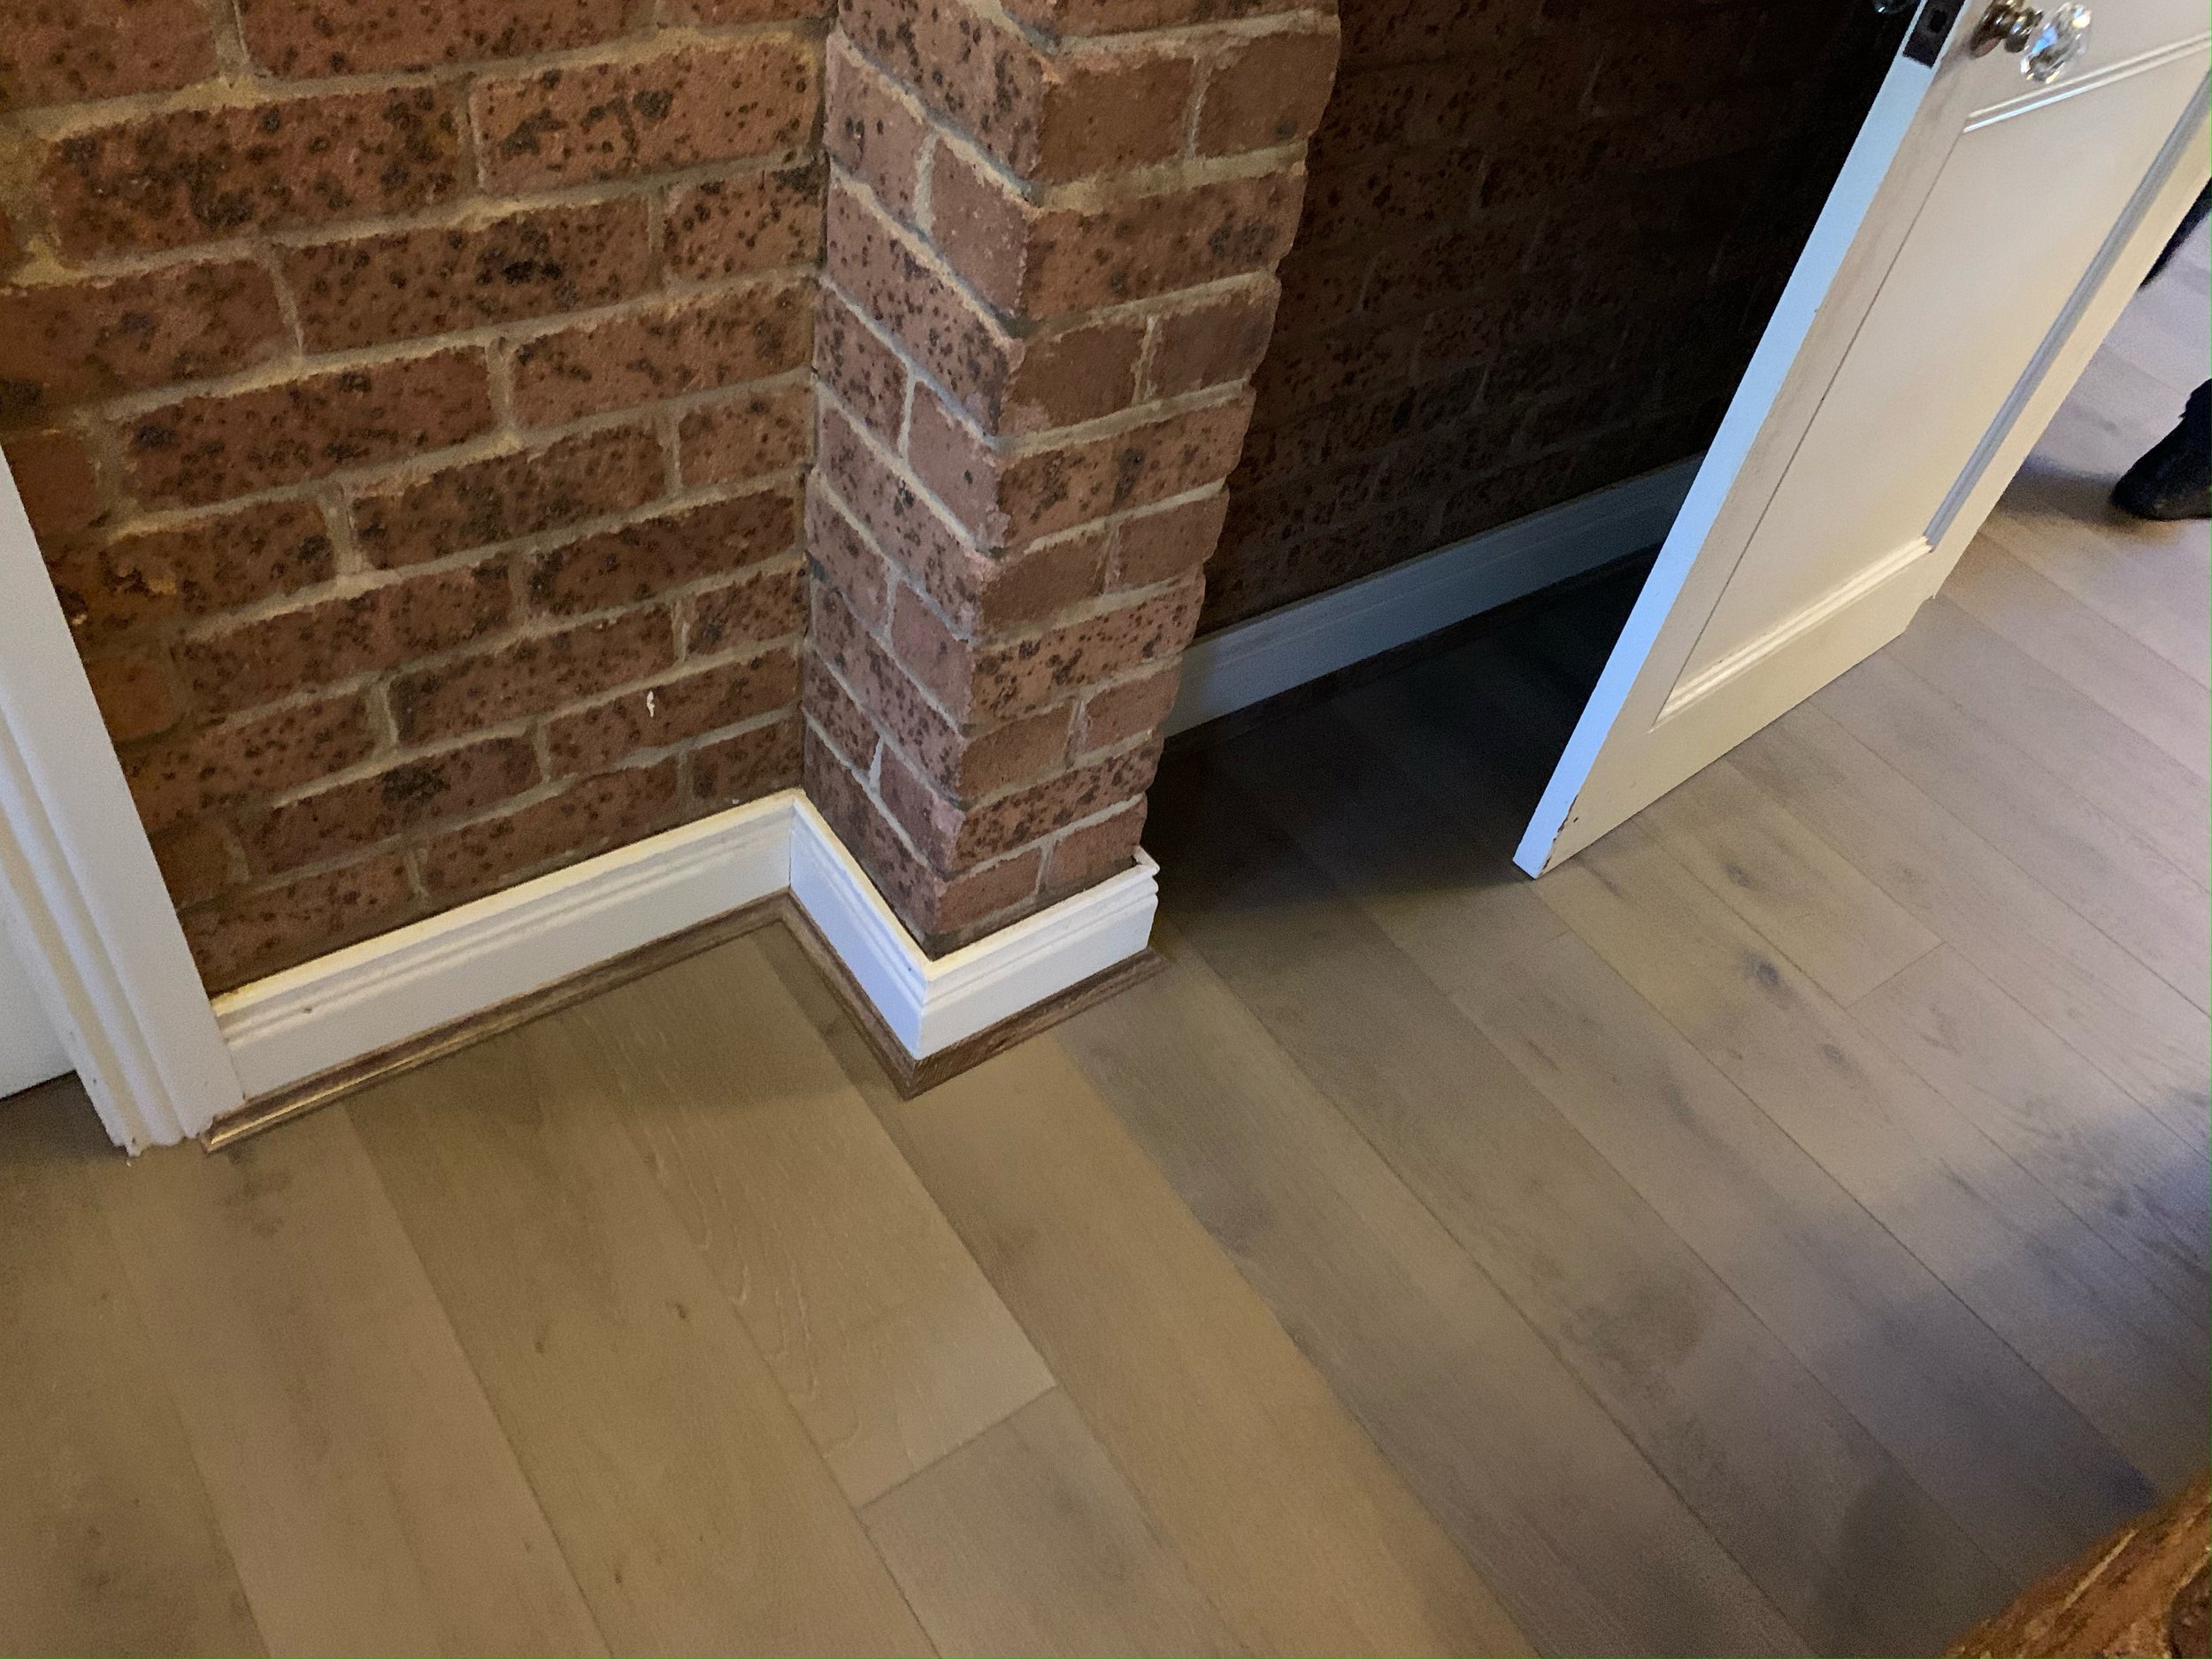  Preference Floors Prestige Oak 190mm in Castle Grey 